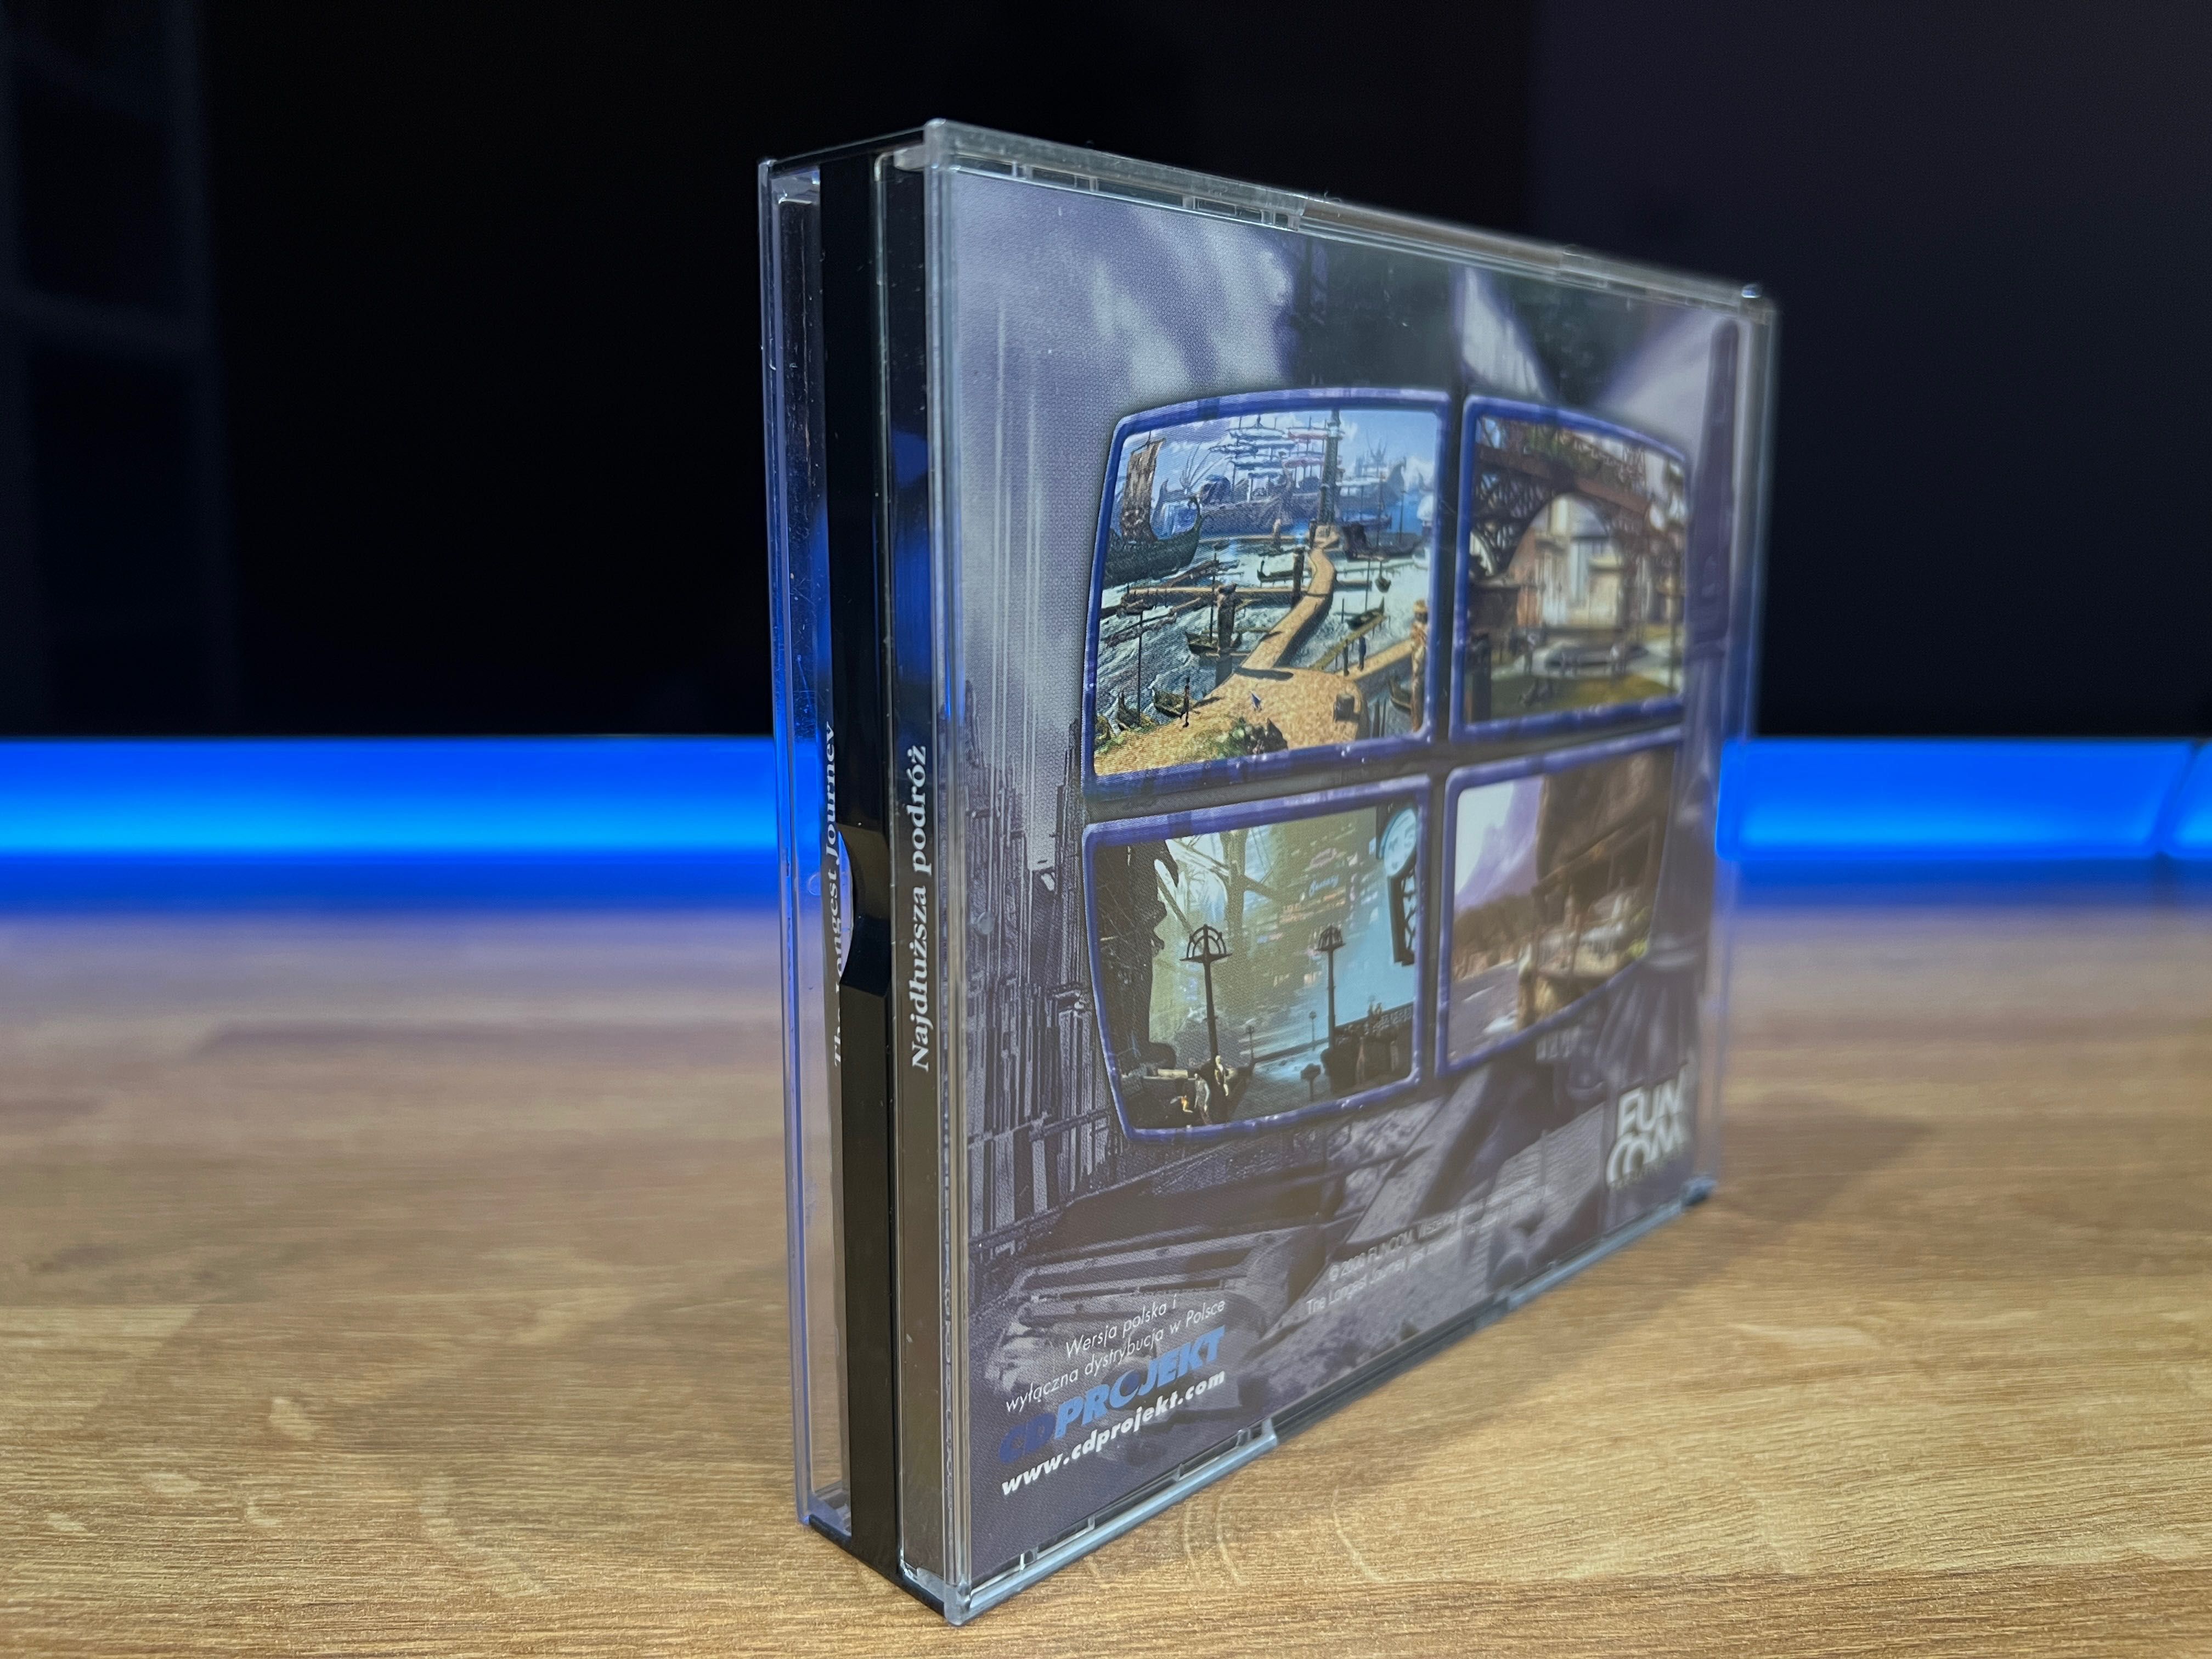 The Longest Journey (PC PL 2000) Jewel Case premierowe wydanie